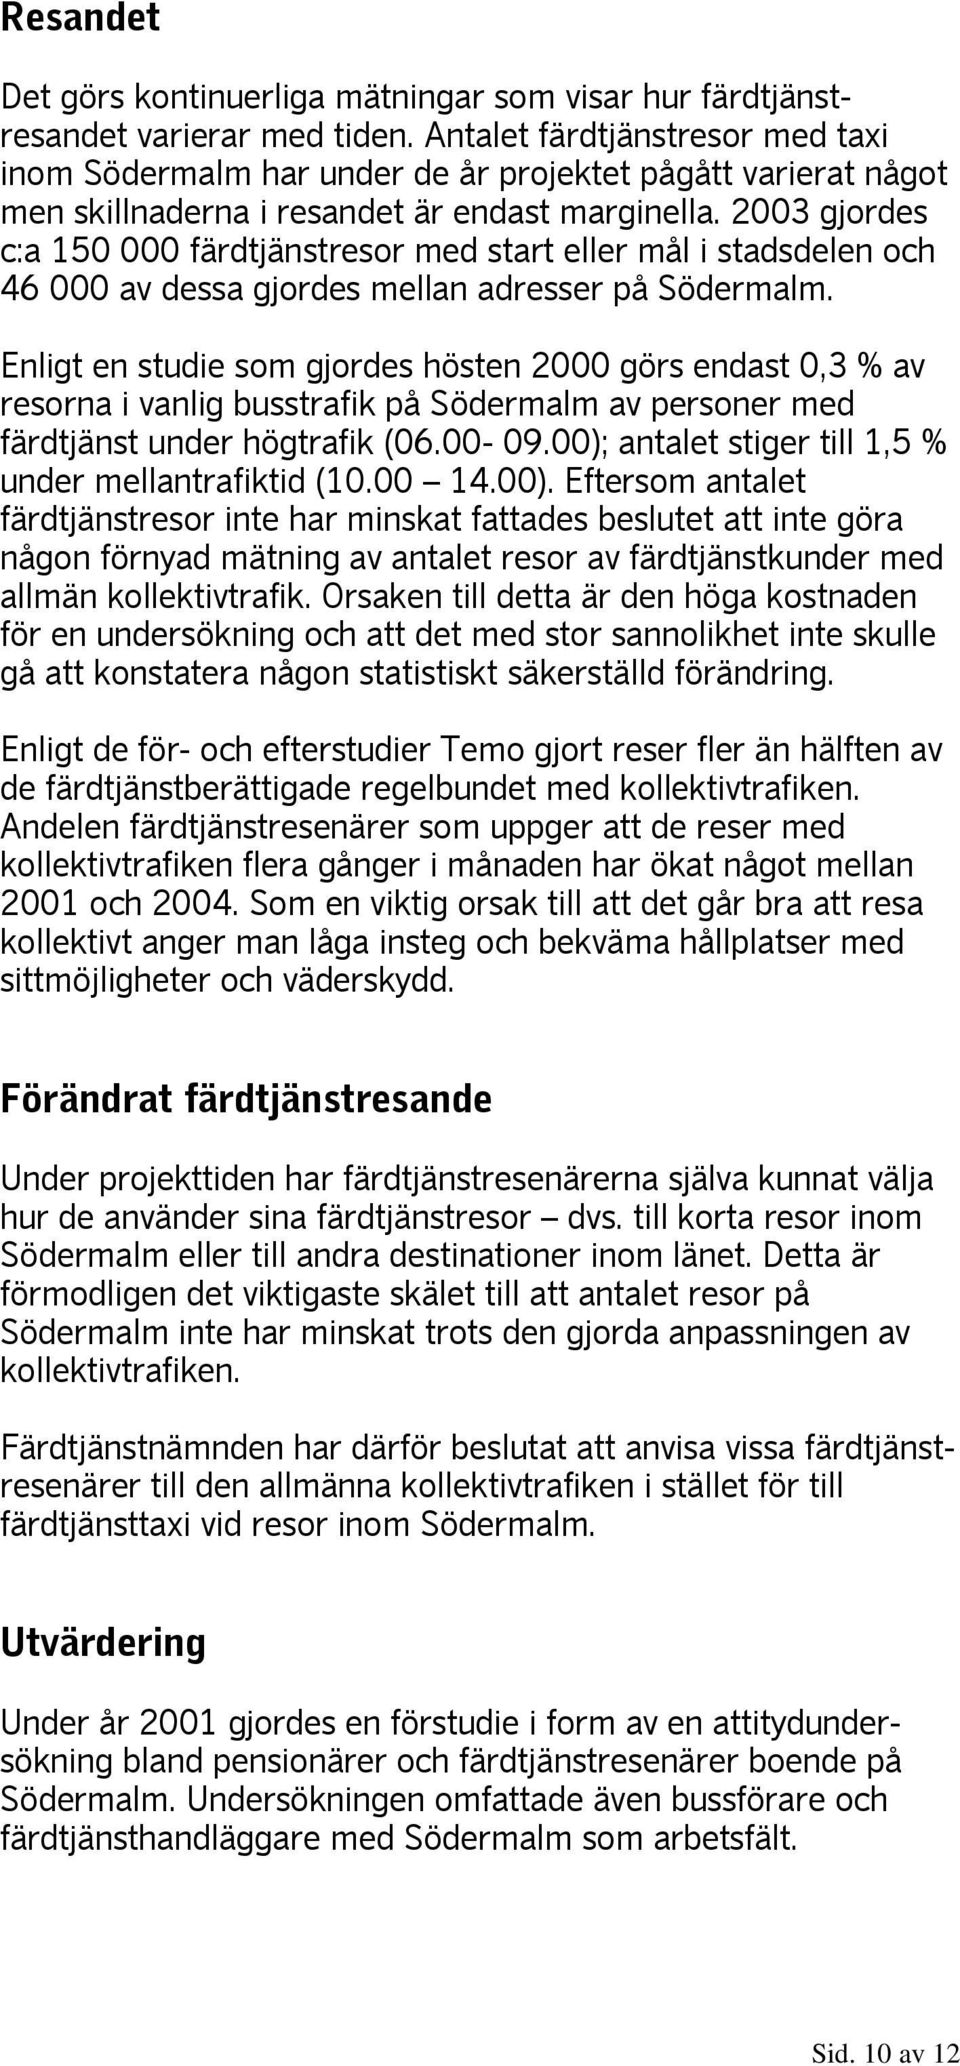 2003 gjordes c:a 150 000 färdtjänstresor med start eller mål i stadsdelen och 46 000 av dessa gjordes mellan adresser på Södermalm.